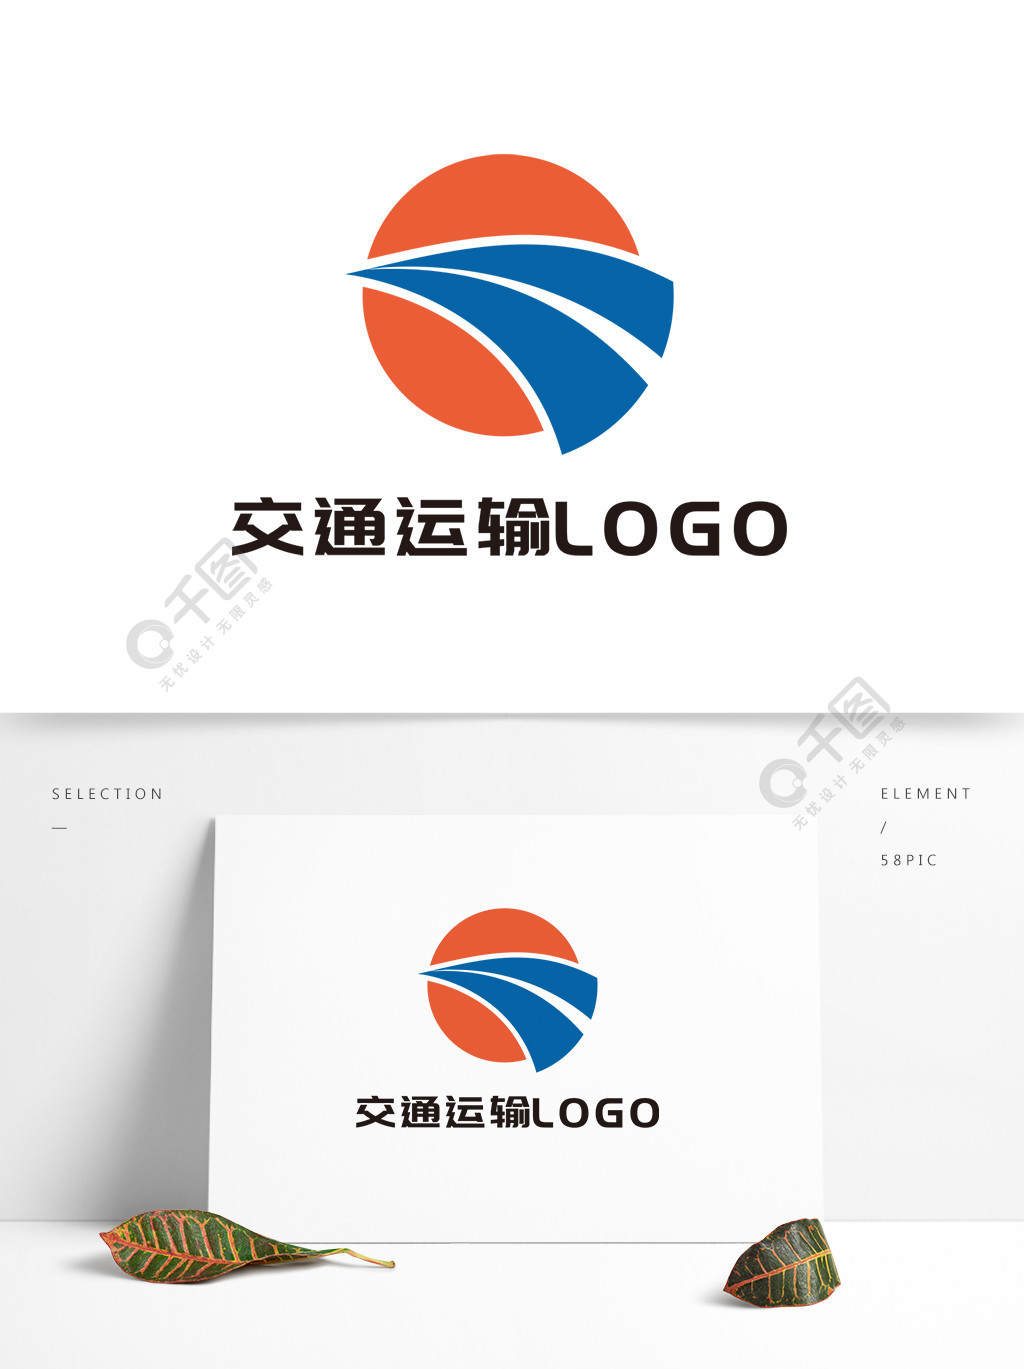 交通运输行业logo设计2年前发布